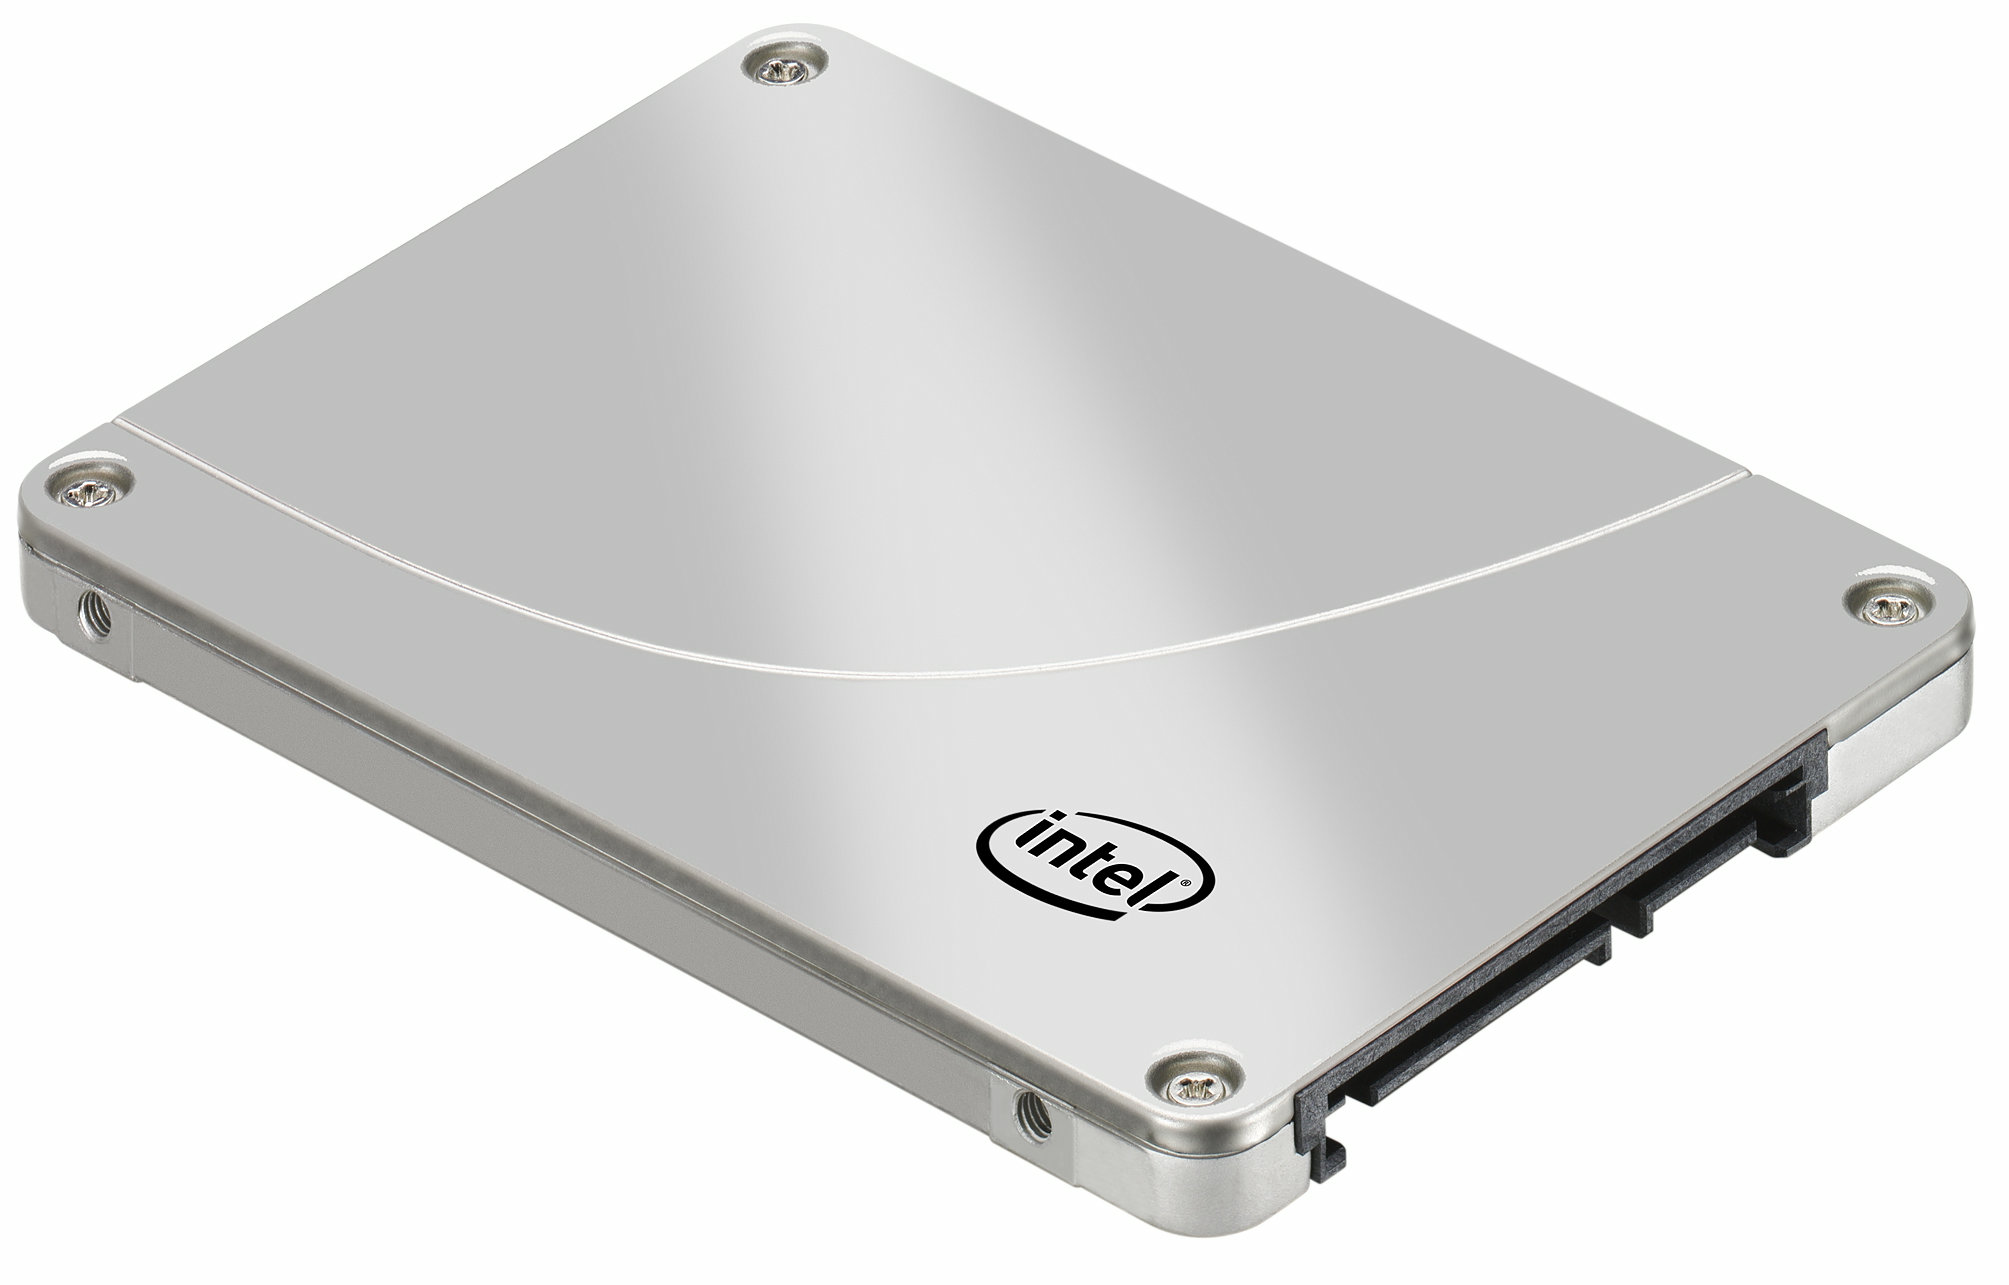 Intelが最大600GBの新型SSD「320シリーズ」を発表、「HDDなど恐るるに足らず」と言わんばかりのムービーも - GIGAZINE